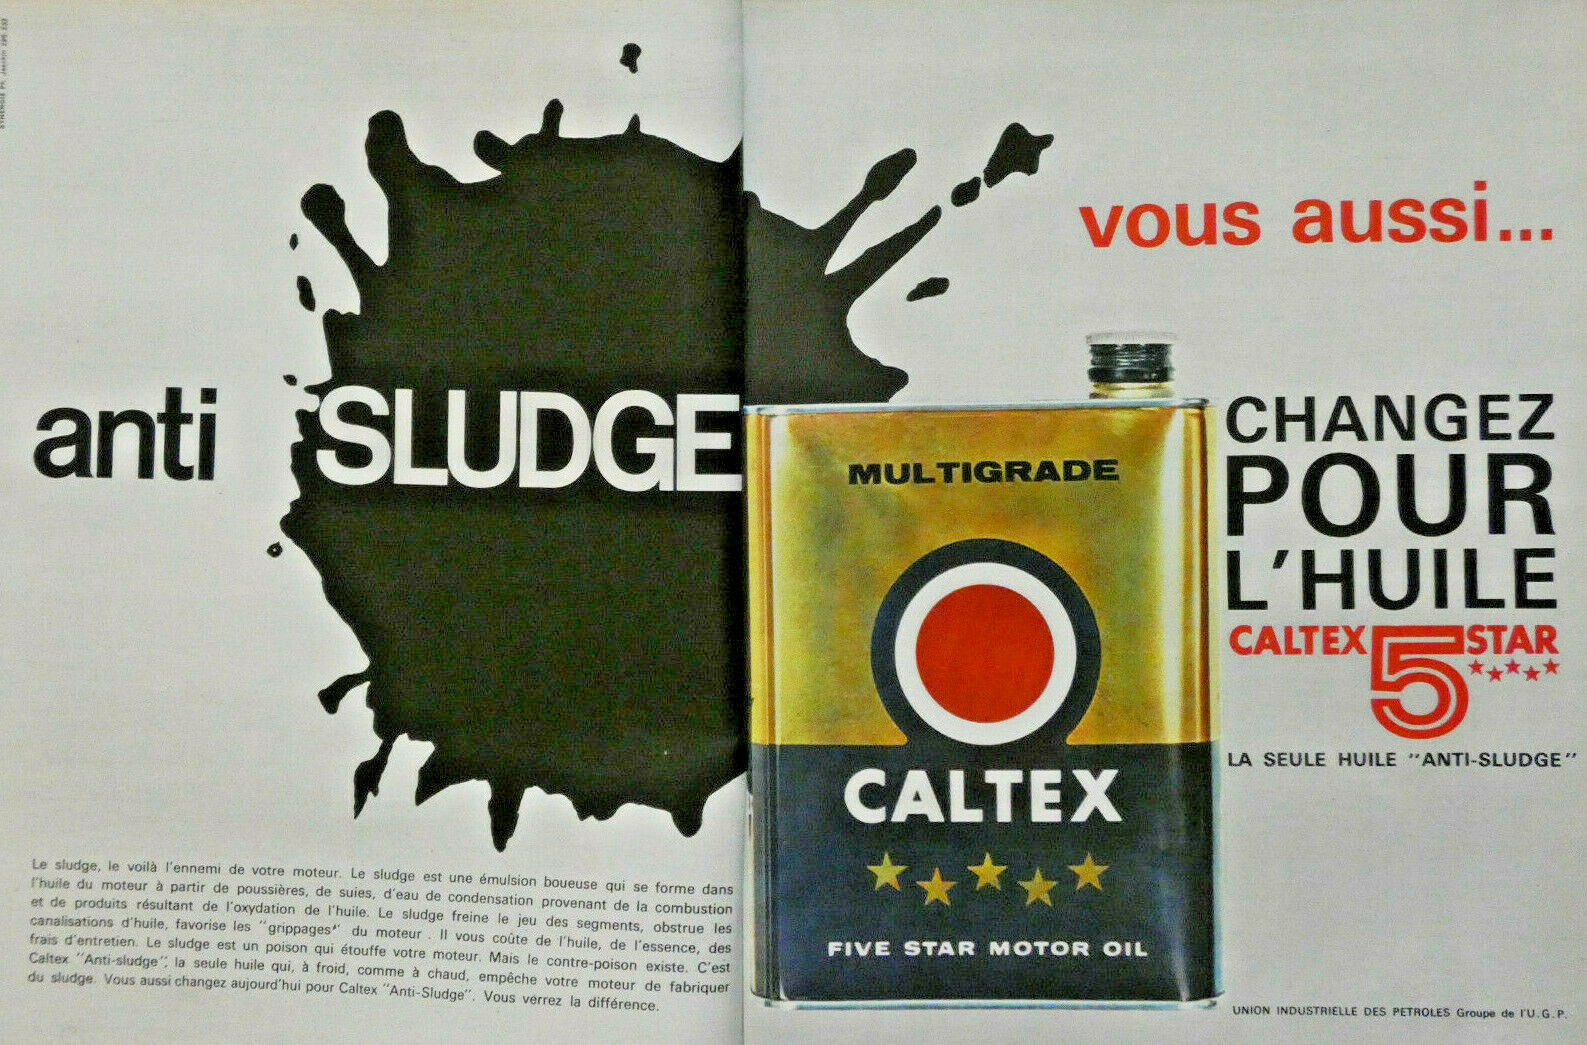 1963 CALTEX ANTI-SLUDGE 5 STAR MULTIGRADE OIL PRESS ADVERTISEMENT - CAN